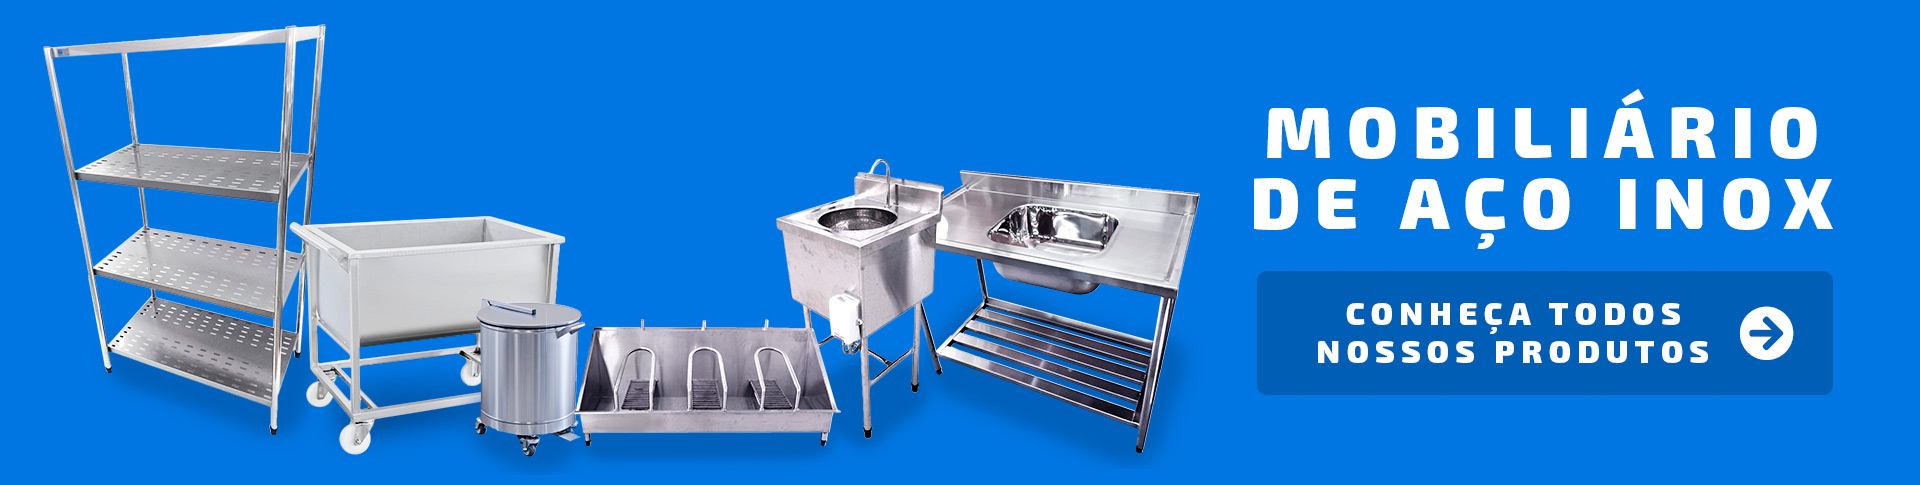 Mobiliário de Aço Inox para Cozinha Industriais - Net Metal